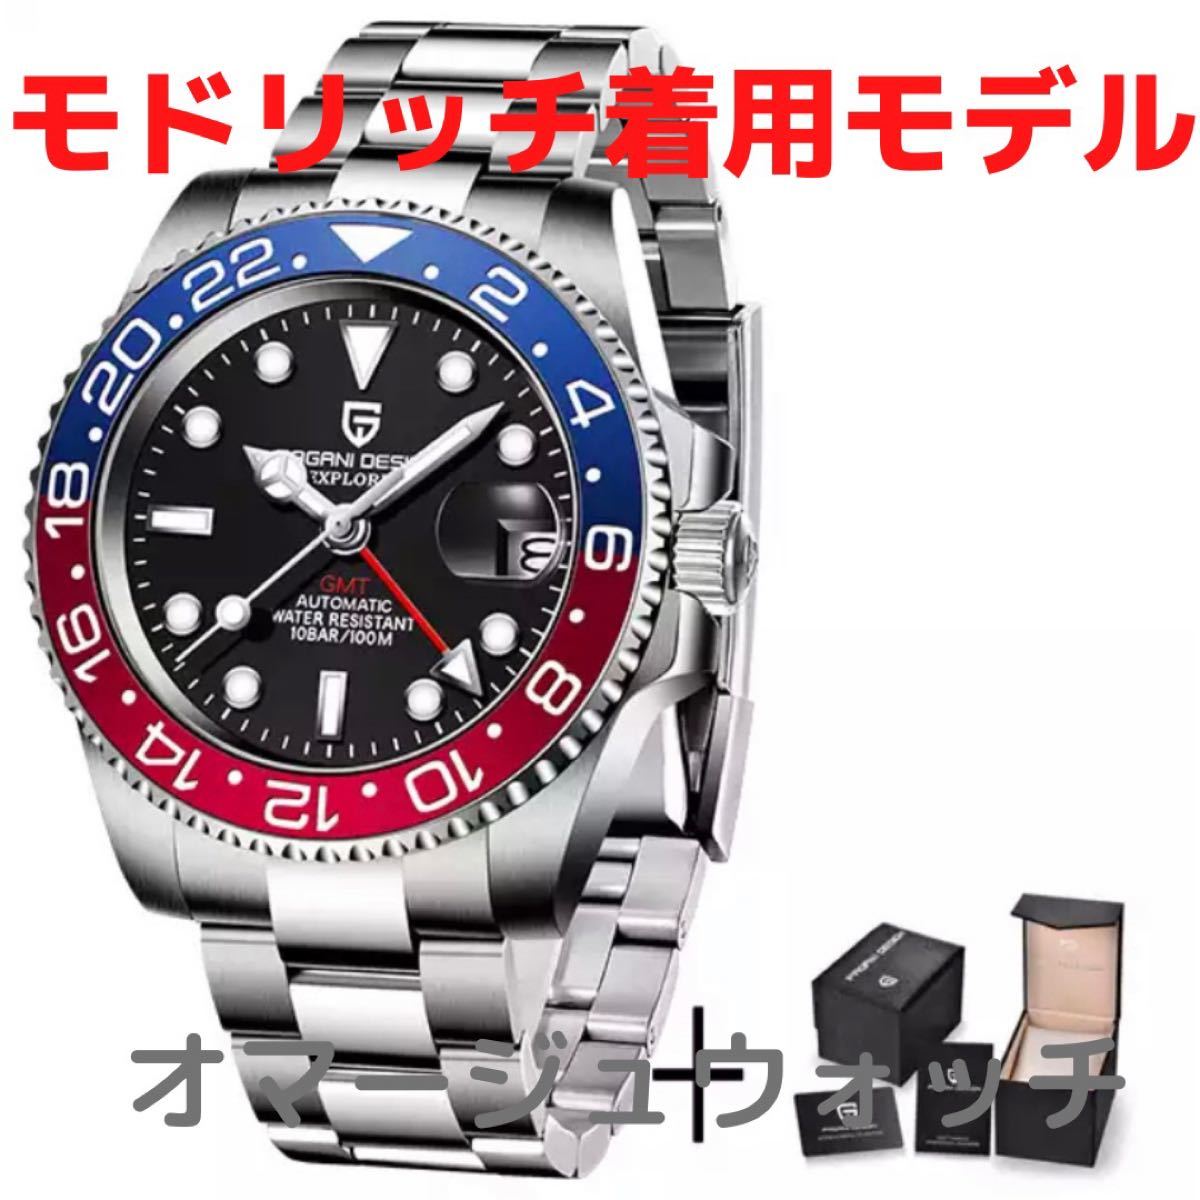 再×14入荷 新品 腕時計 メンズ ウォッチ 機械式自動巻き デイトナ 